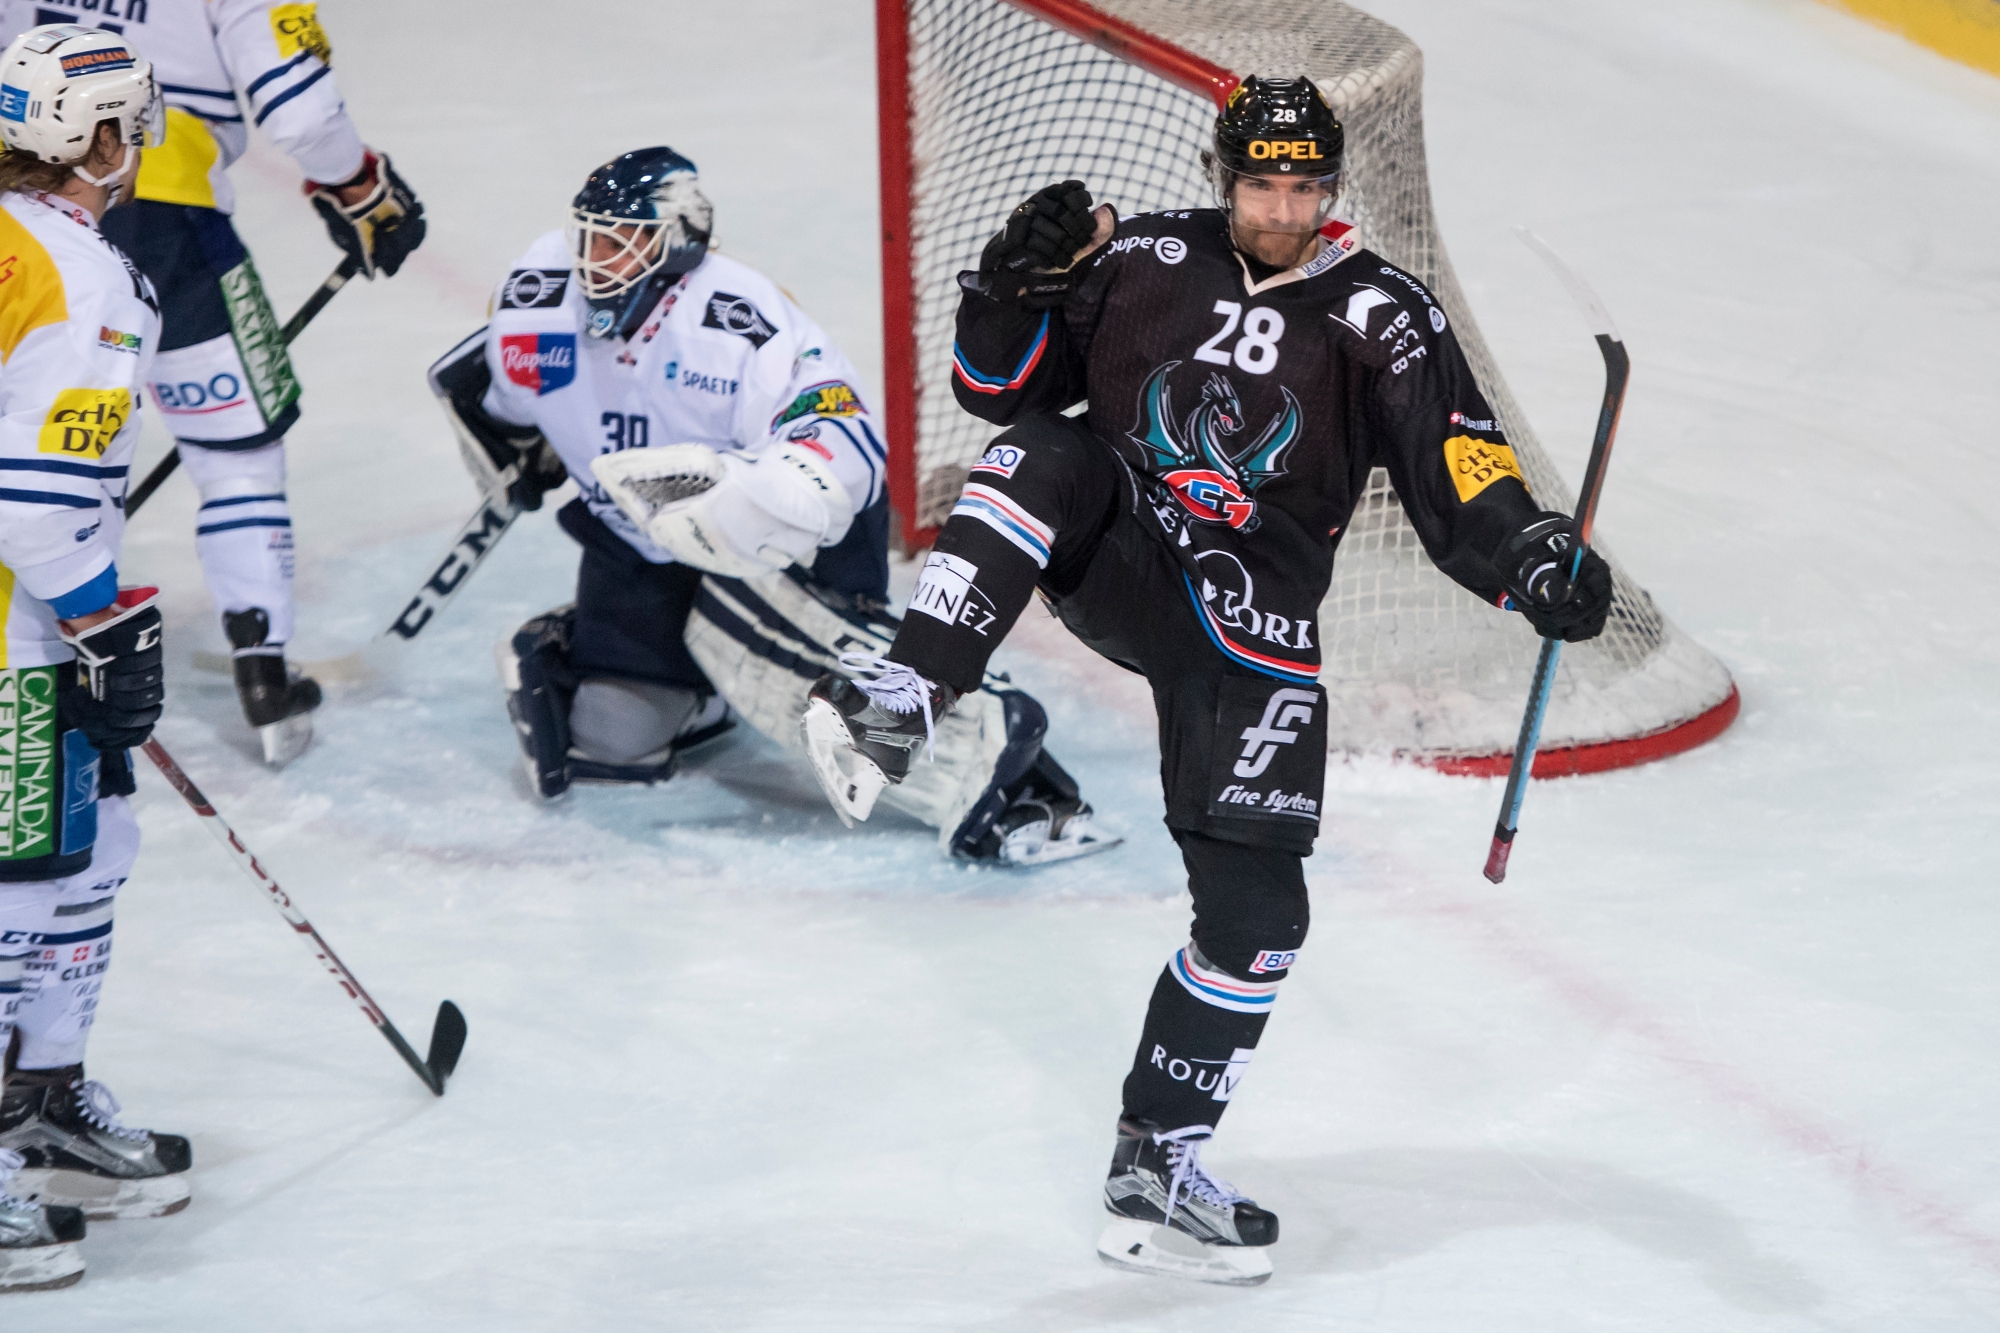 Joie du joueur fribourgeois Tristan Vauclair, apres avoir marque le 3:0 lors du 1er match de la finale de Play-out du championnat suisse de hockey sur glace de National League A, entre le HC Fribourg-Gotteron et le HC Ambri-Piotta ce mardi 21 mars 2017 a la patinoire de la BCF Arena a Fribourg. (KEYSTONE/Jean-Christophe Bott) SCHWEIZ EISHOCKEY PLAYOUT-FINAL FRIBOURG AMBRI